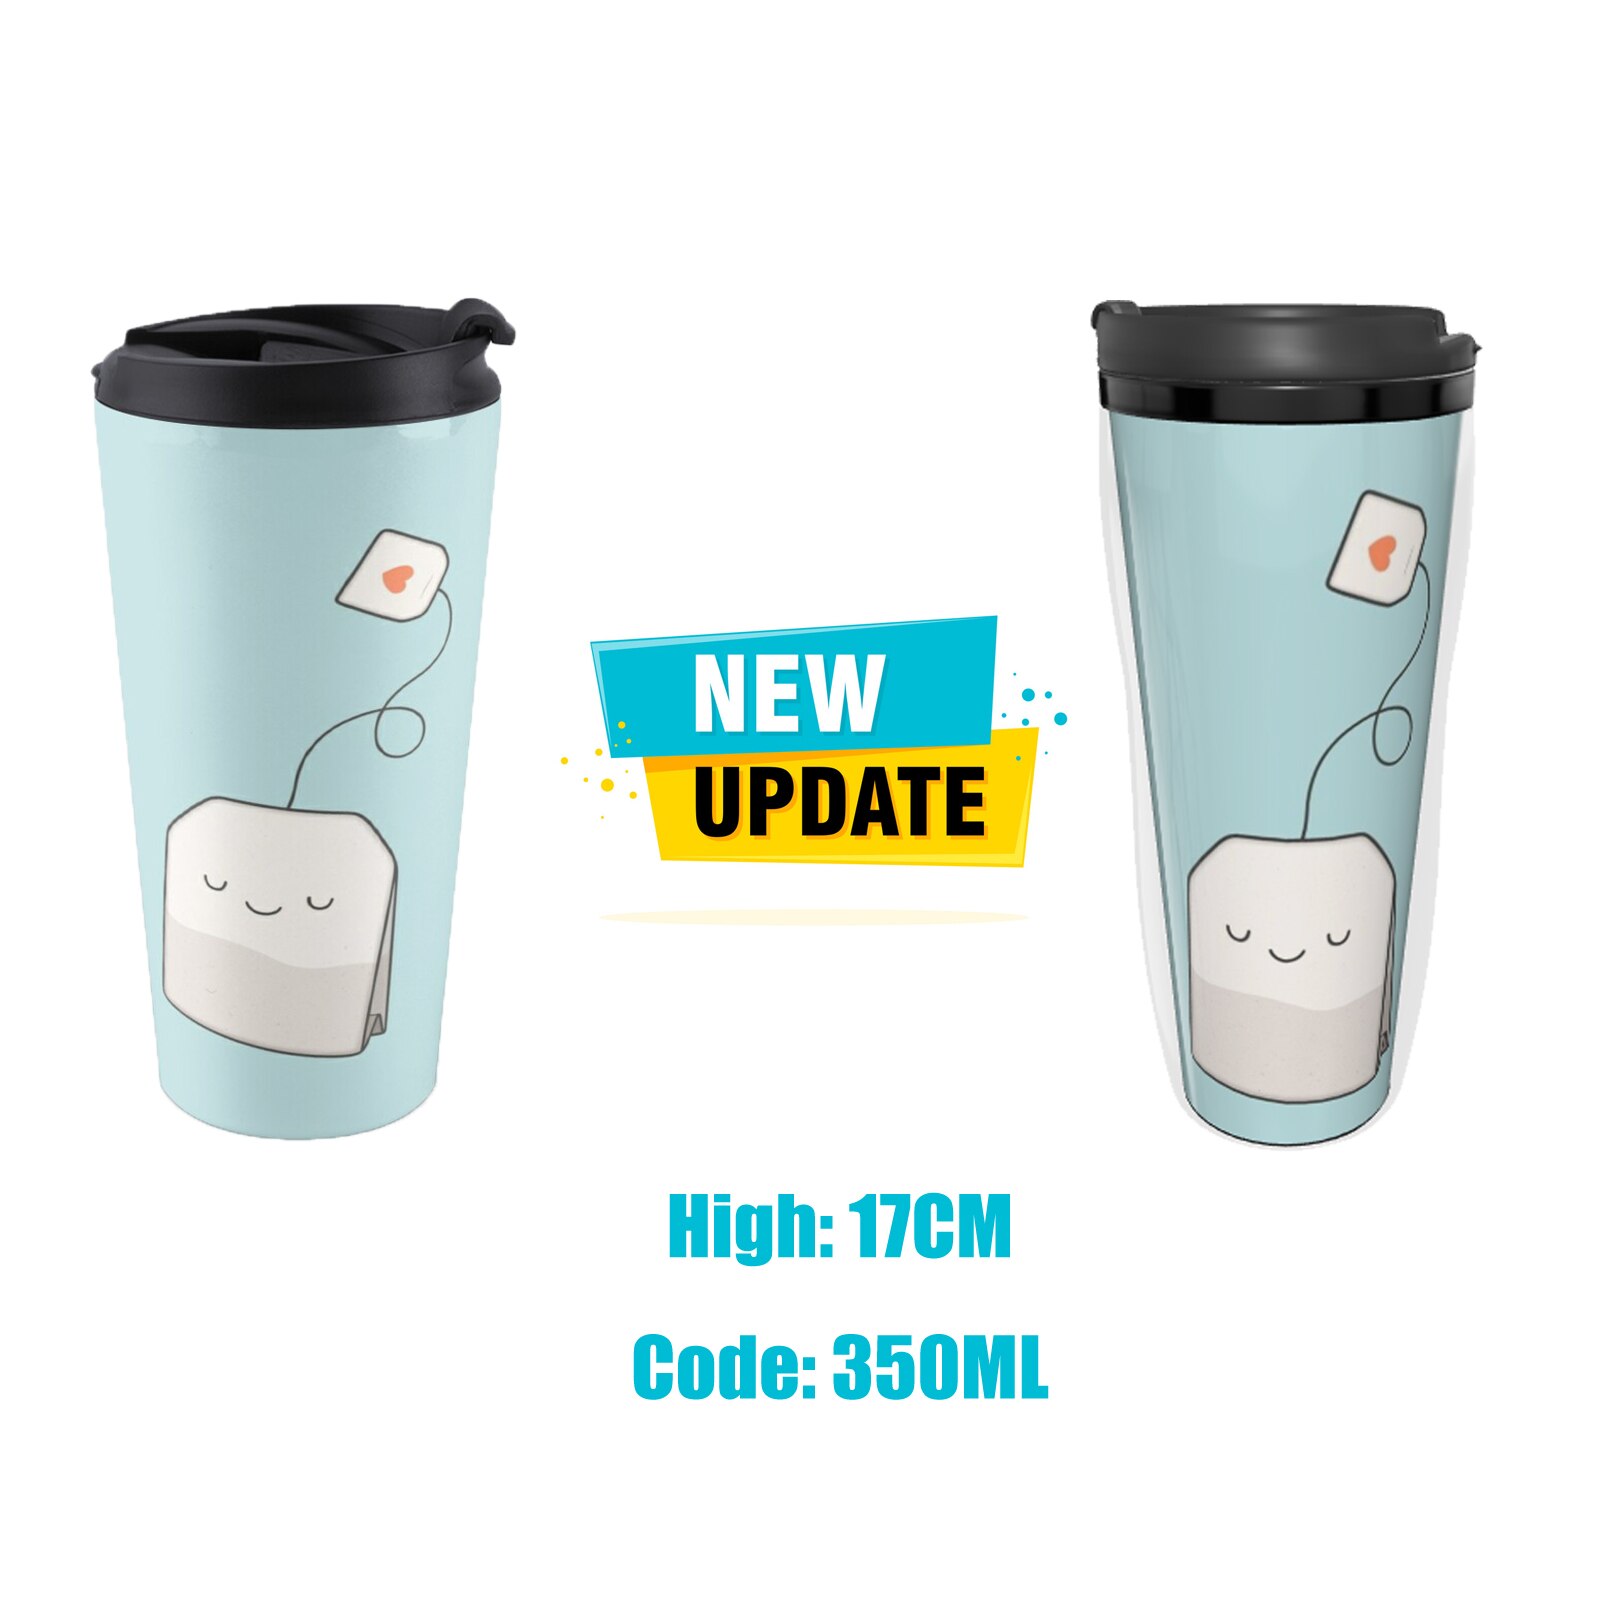 The Hood Travel Coffee Mug Thermal Glass For Coffee Arab Coffee Cups